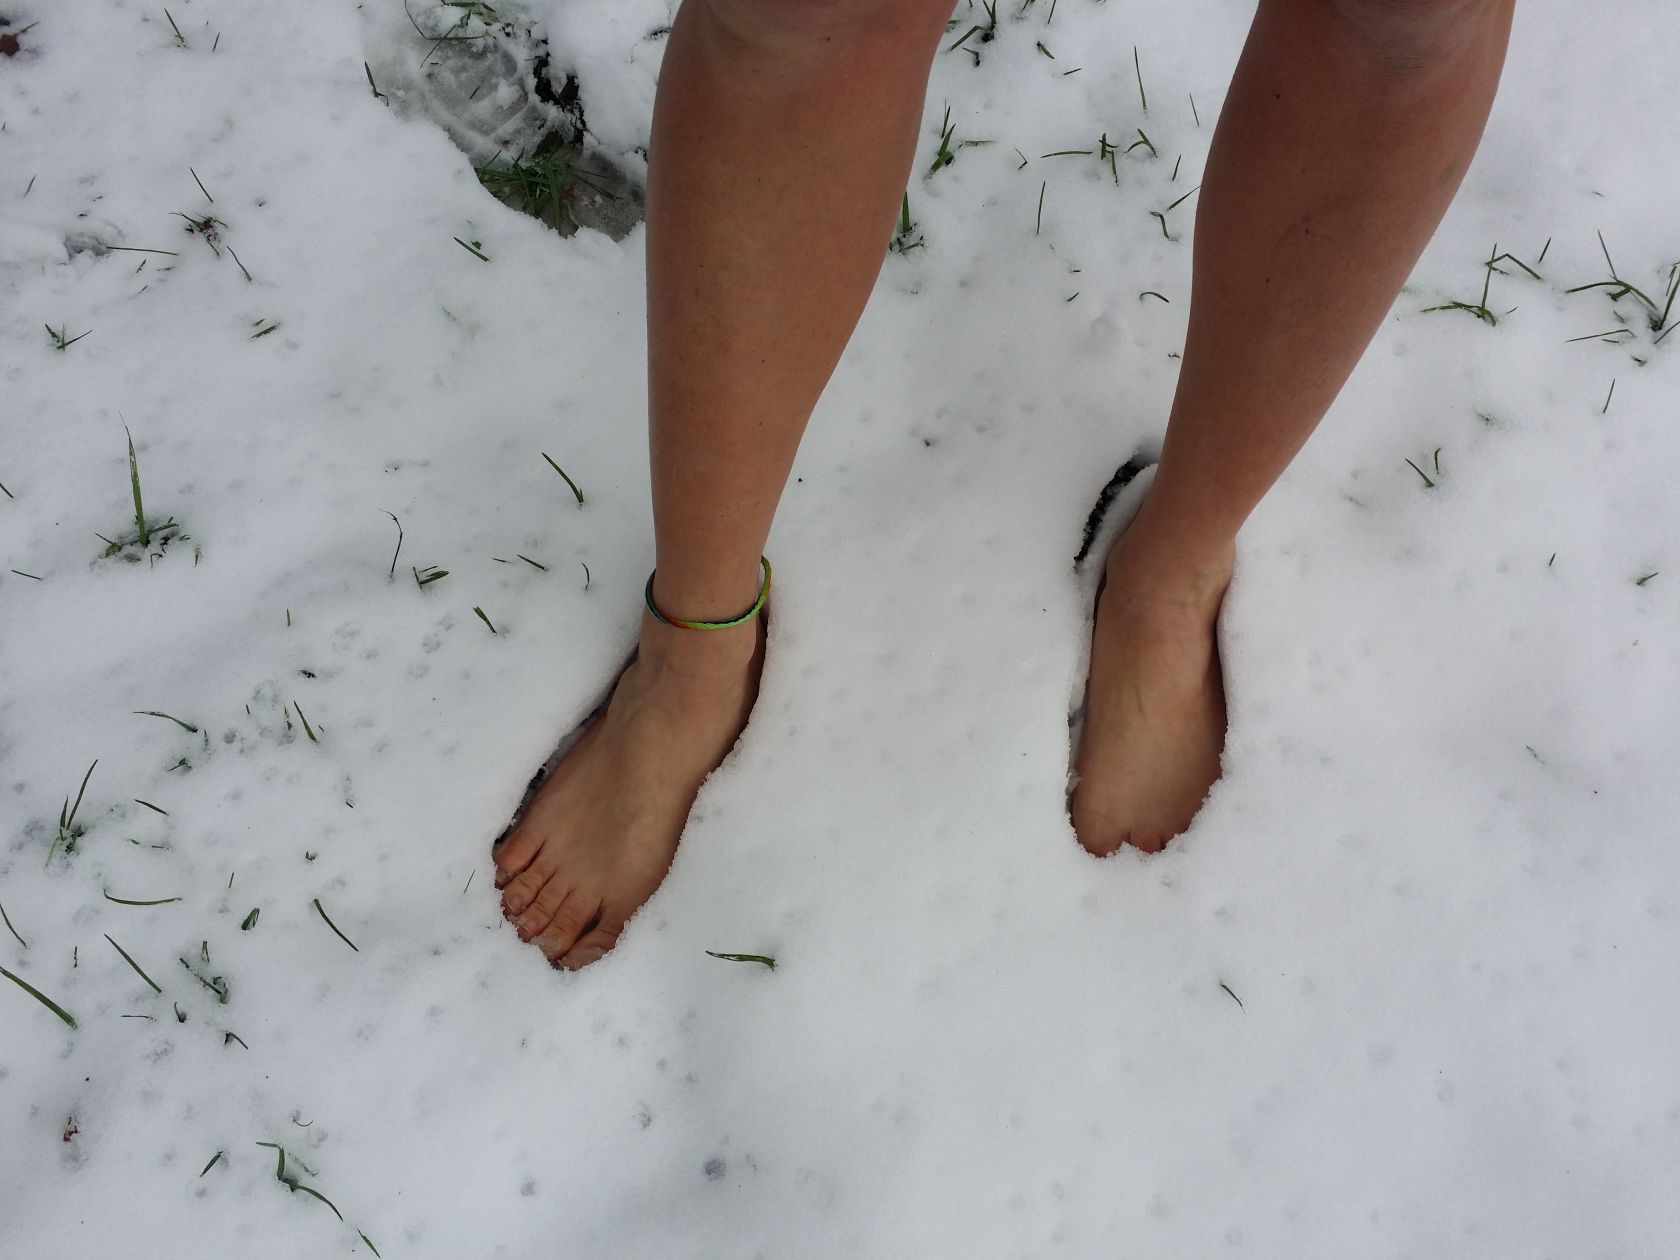 Nackte Füße im Schnee